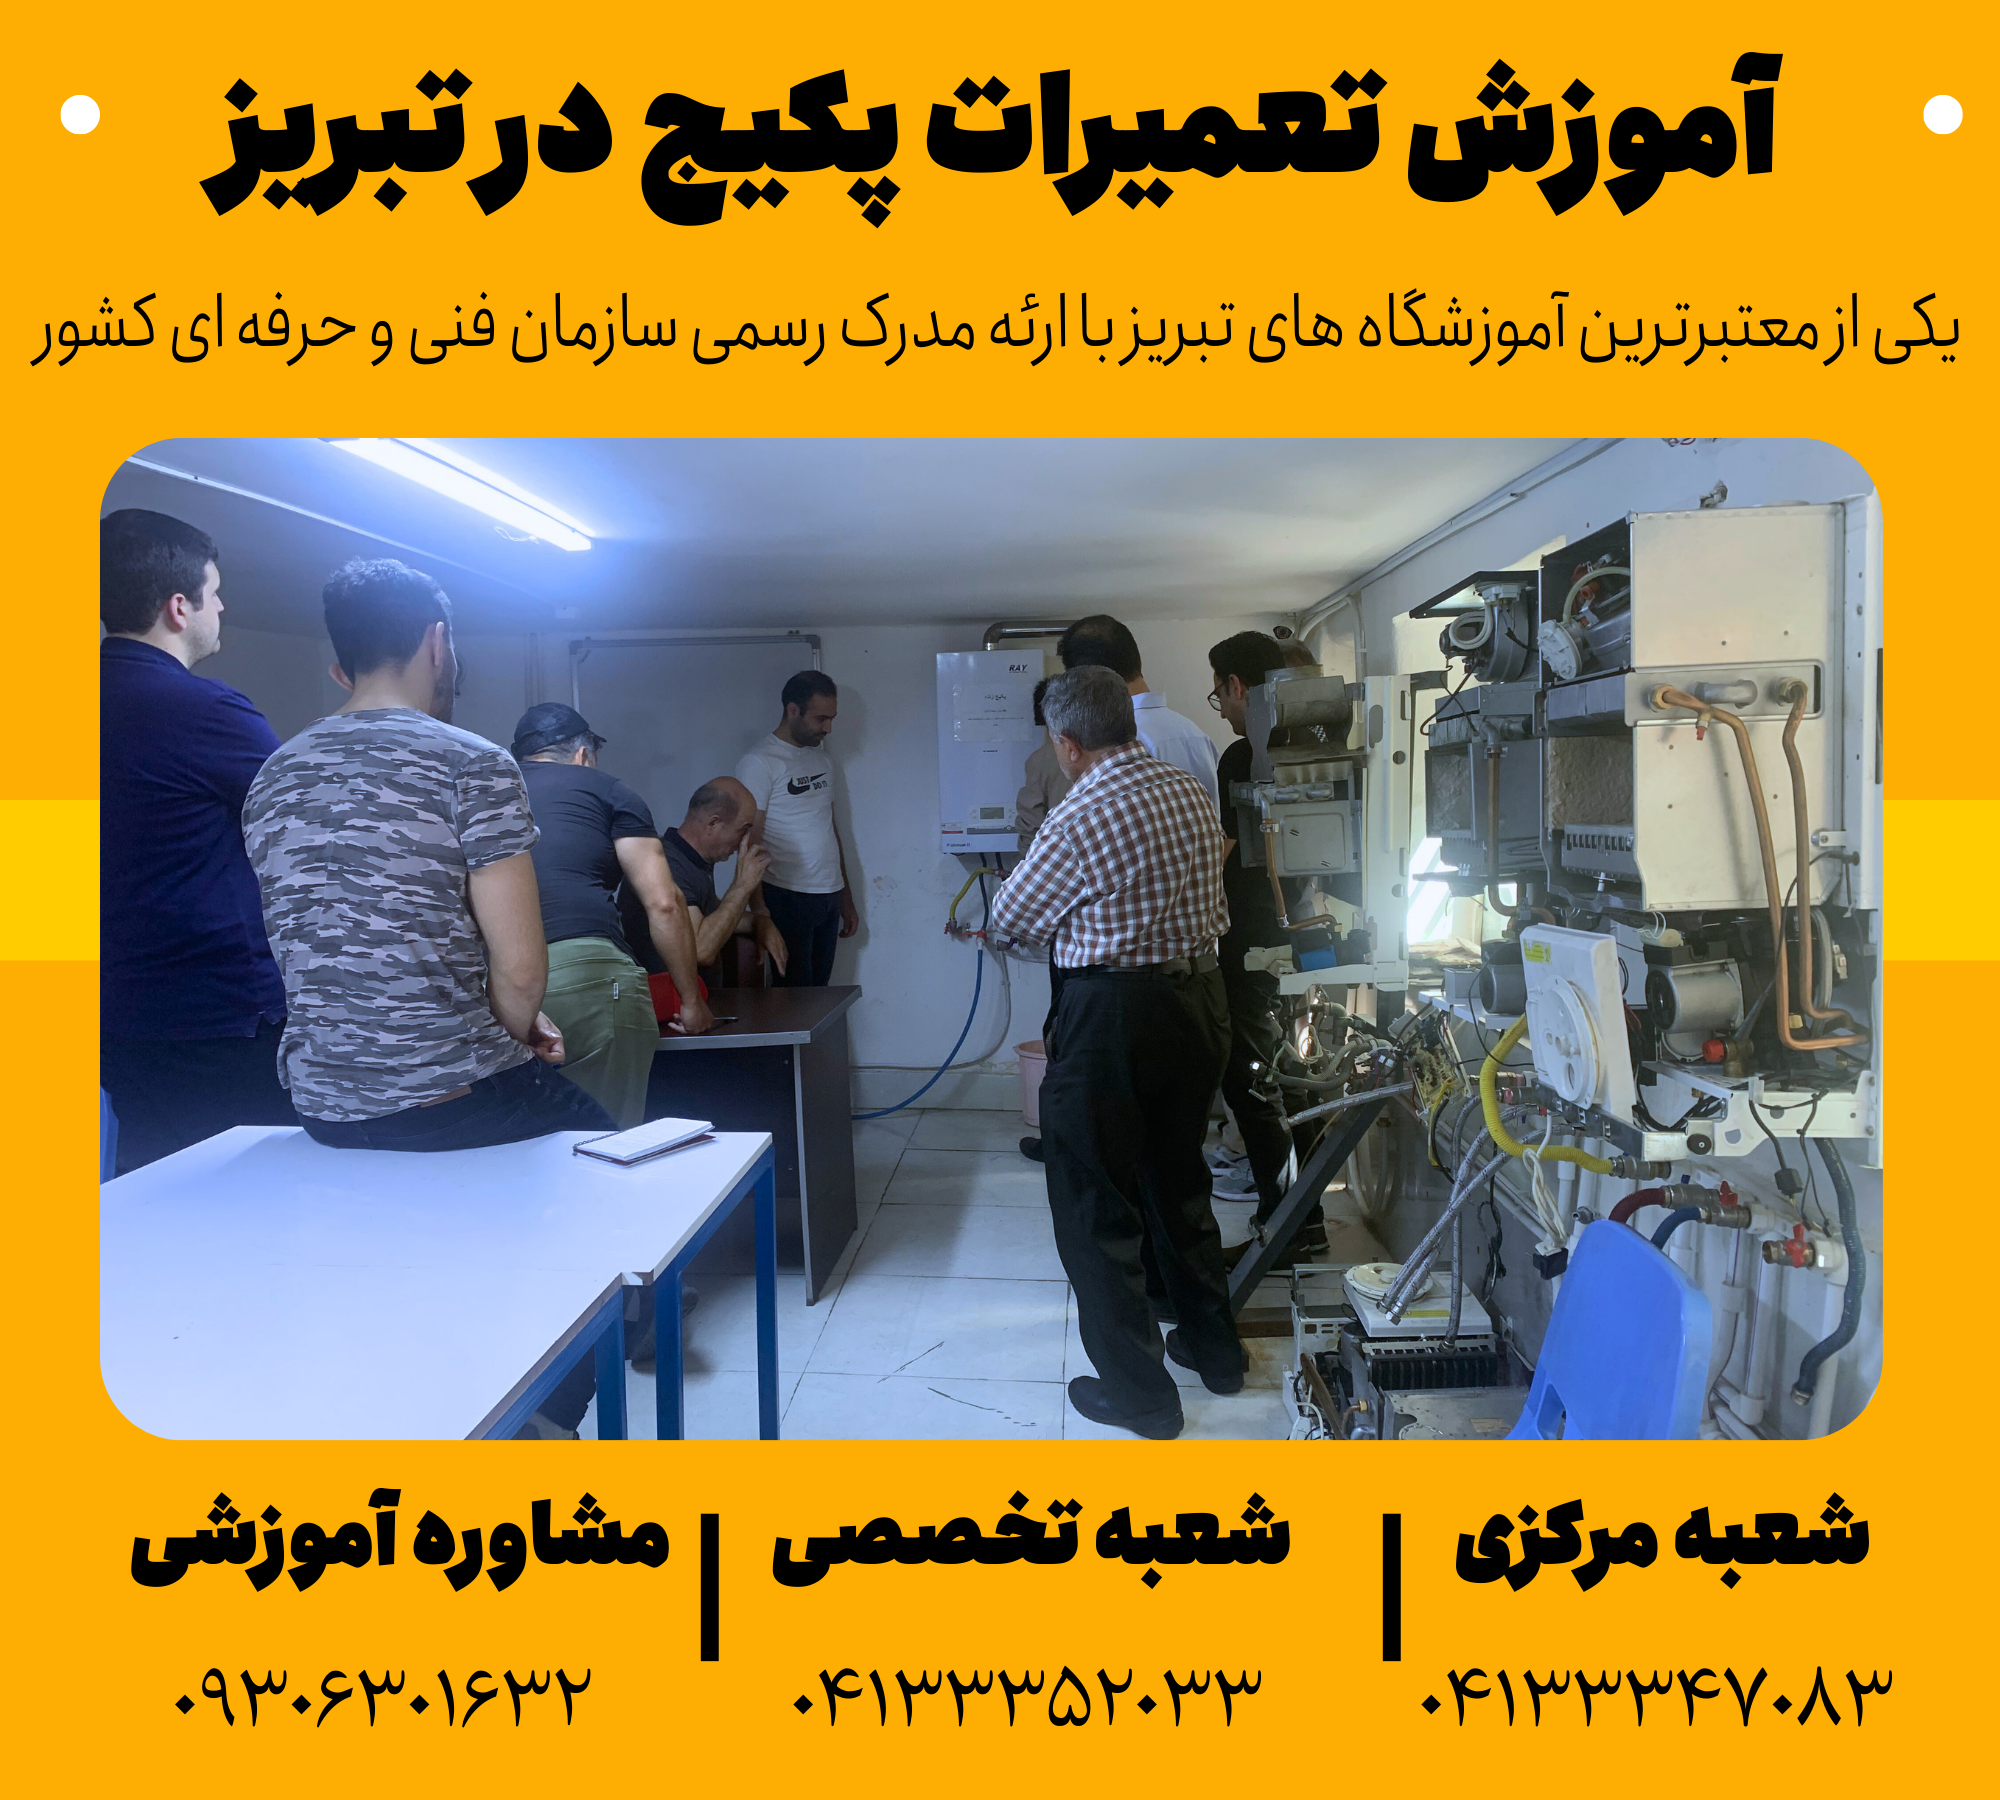 آموزش تعمیرات پکیج در تبریز